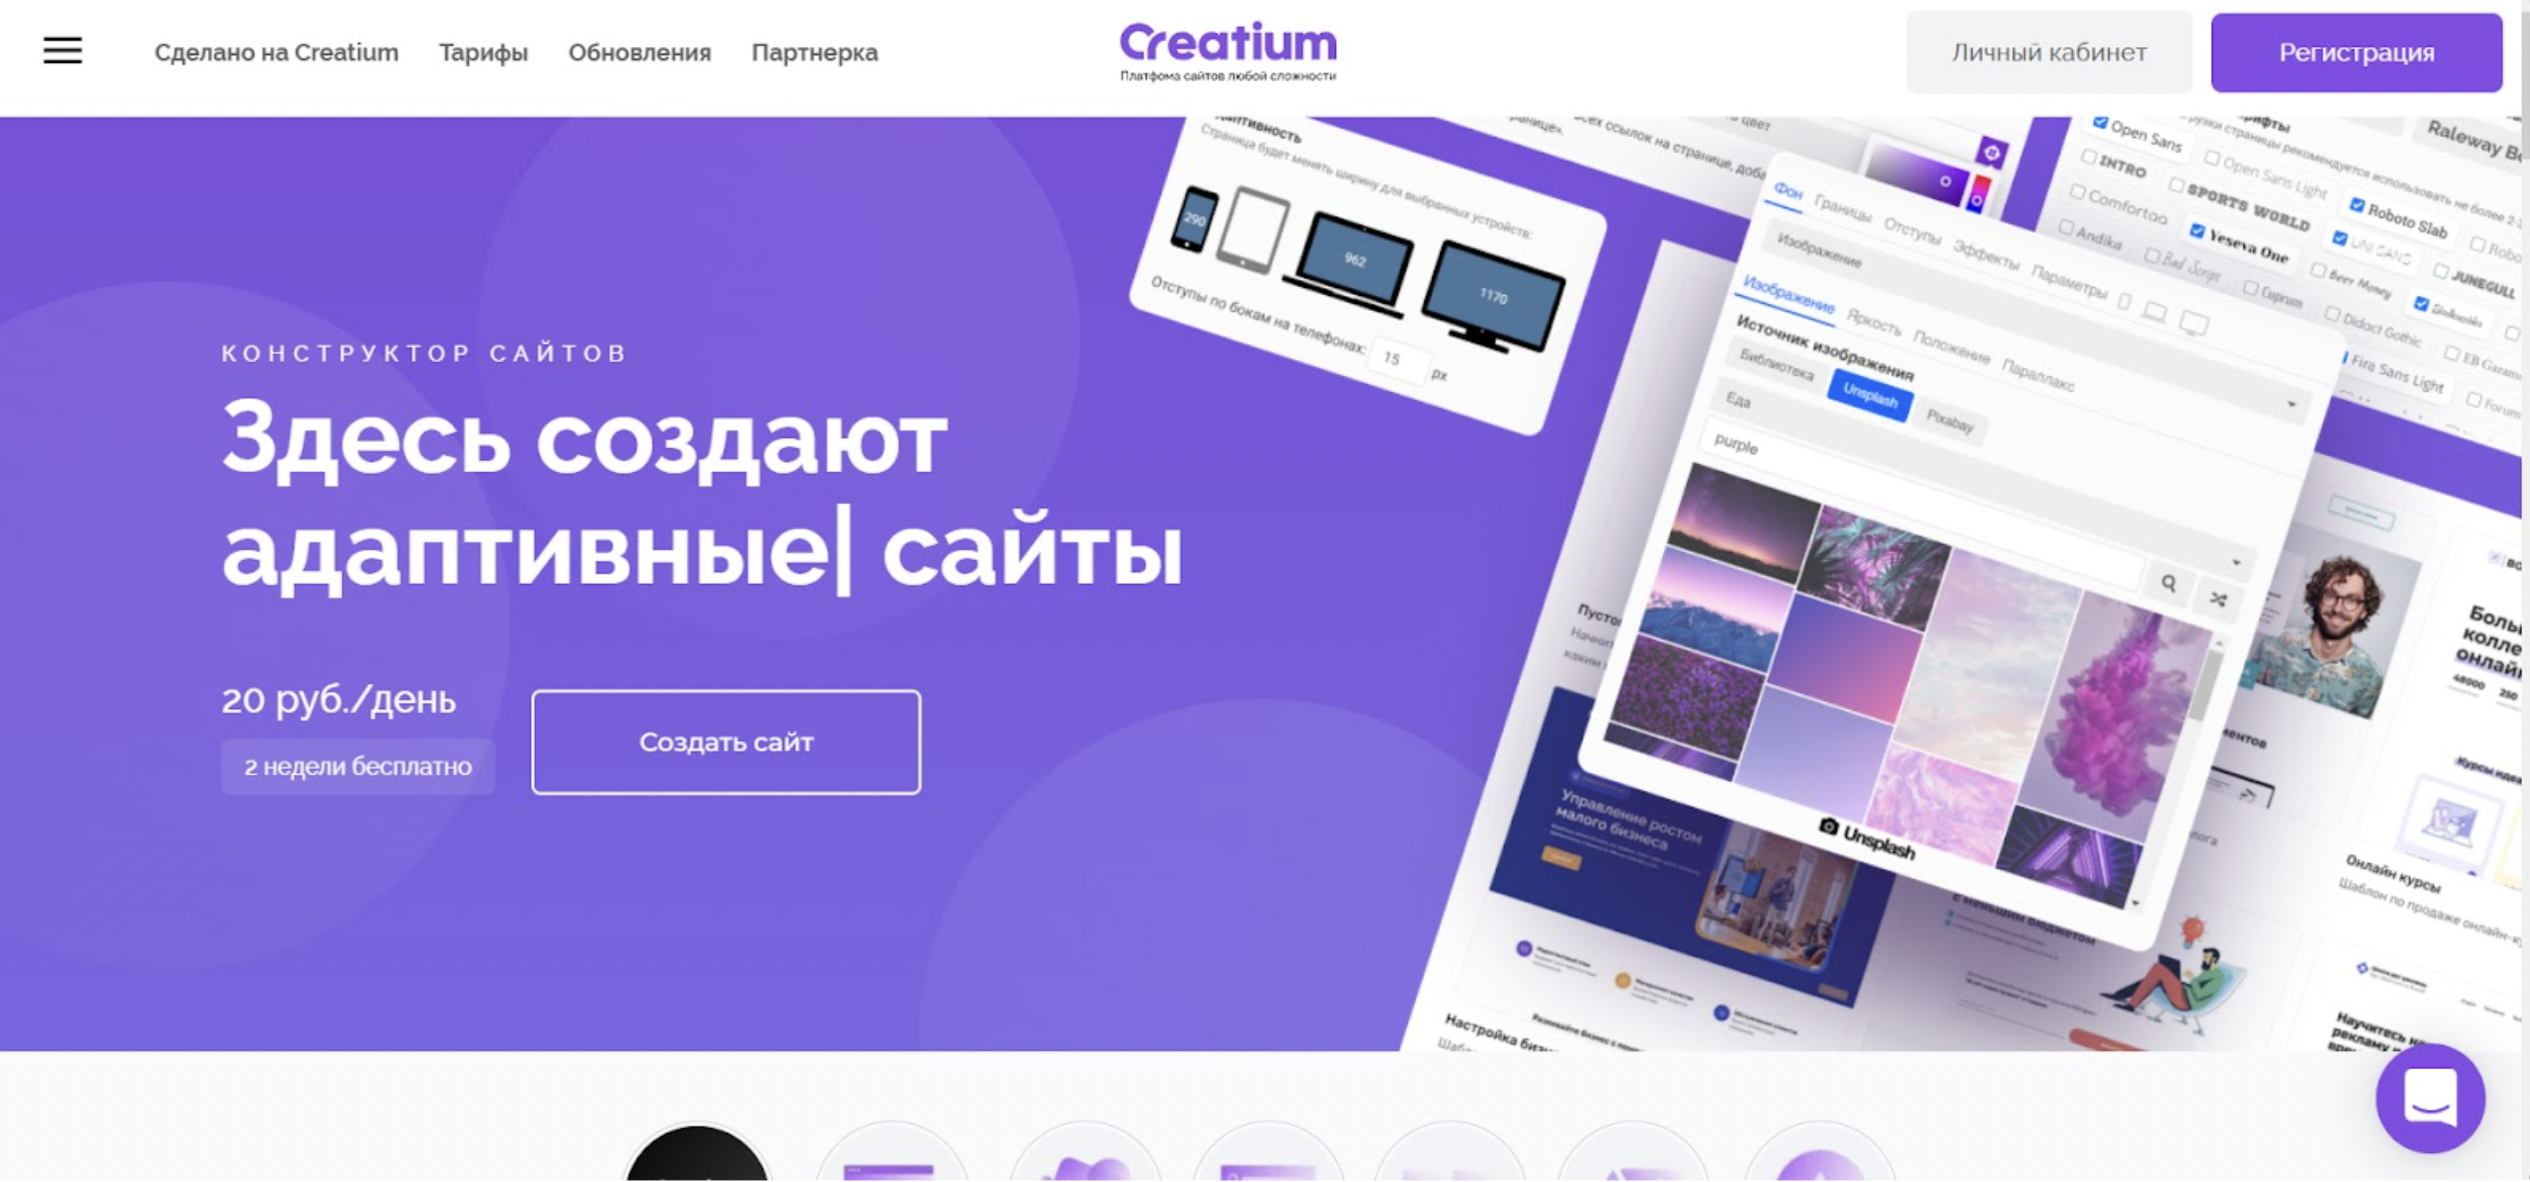 Главная страница платформы Creatium